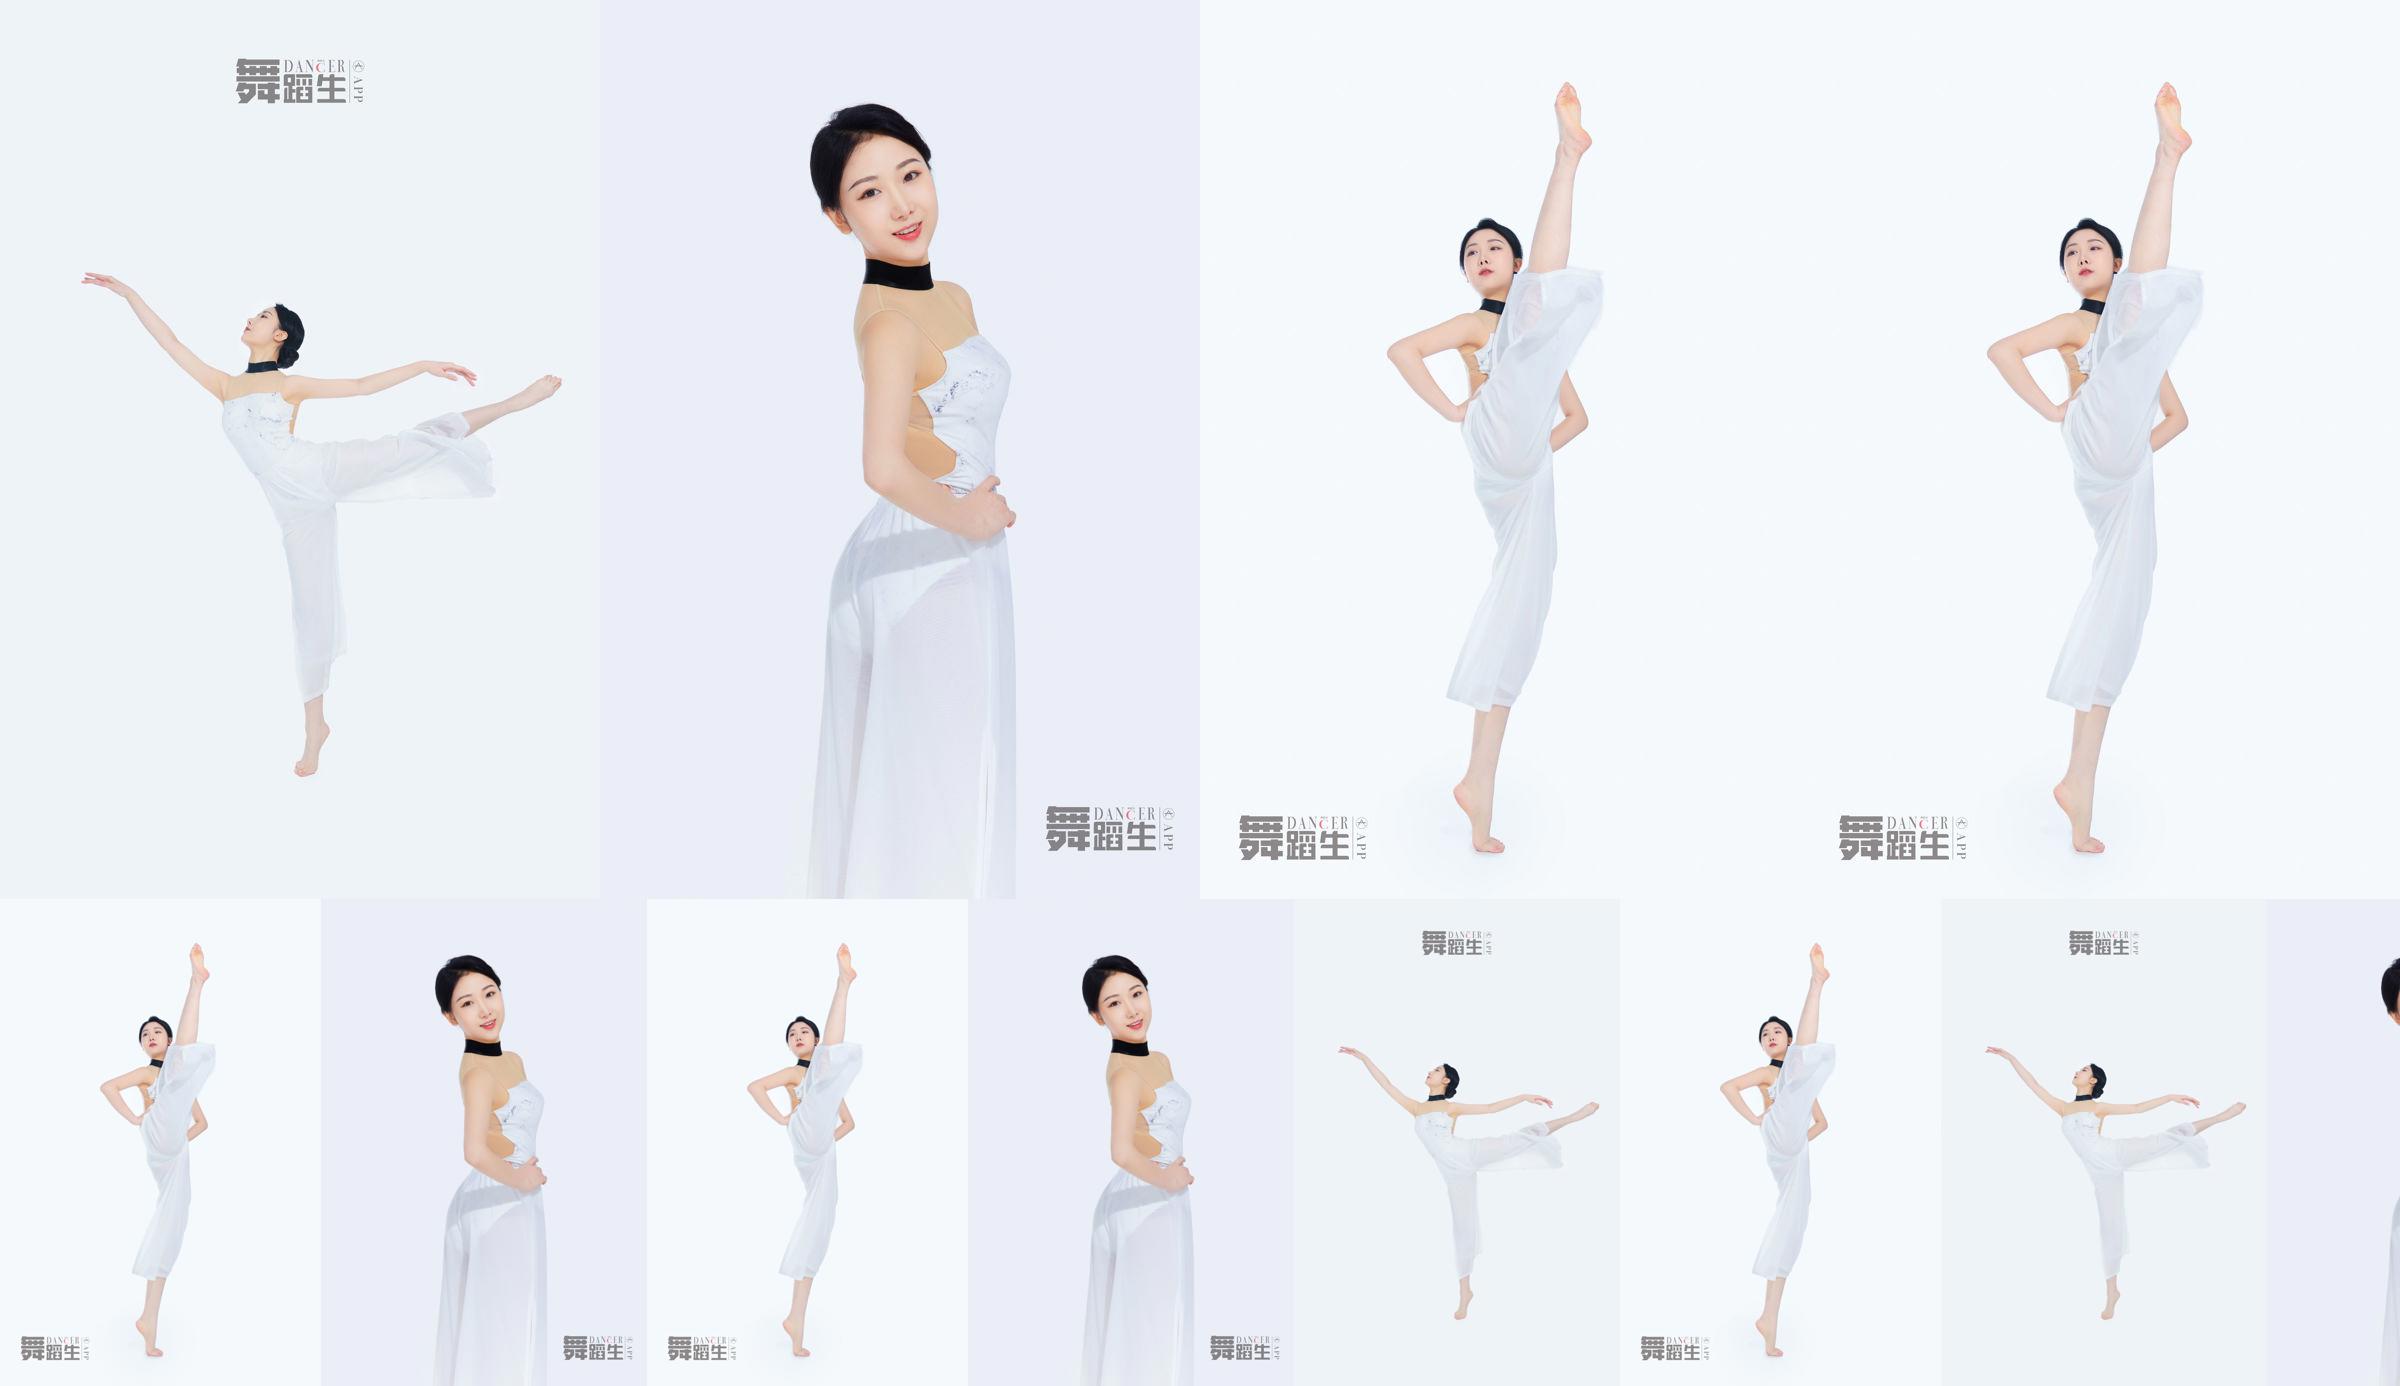 [Carrie Galli] Journal d'un étudiant en danse 081 Xue Hui No.36db6f Page 13